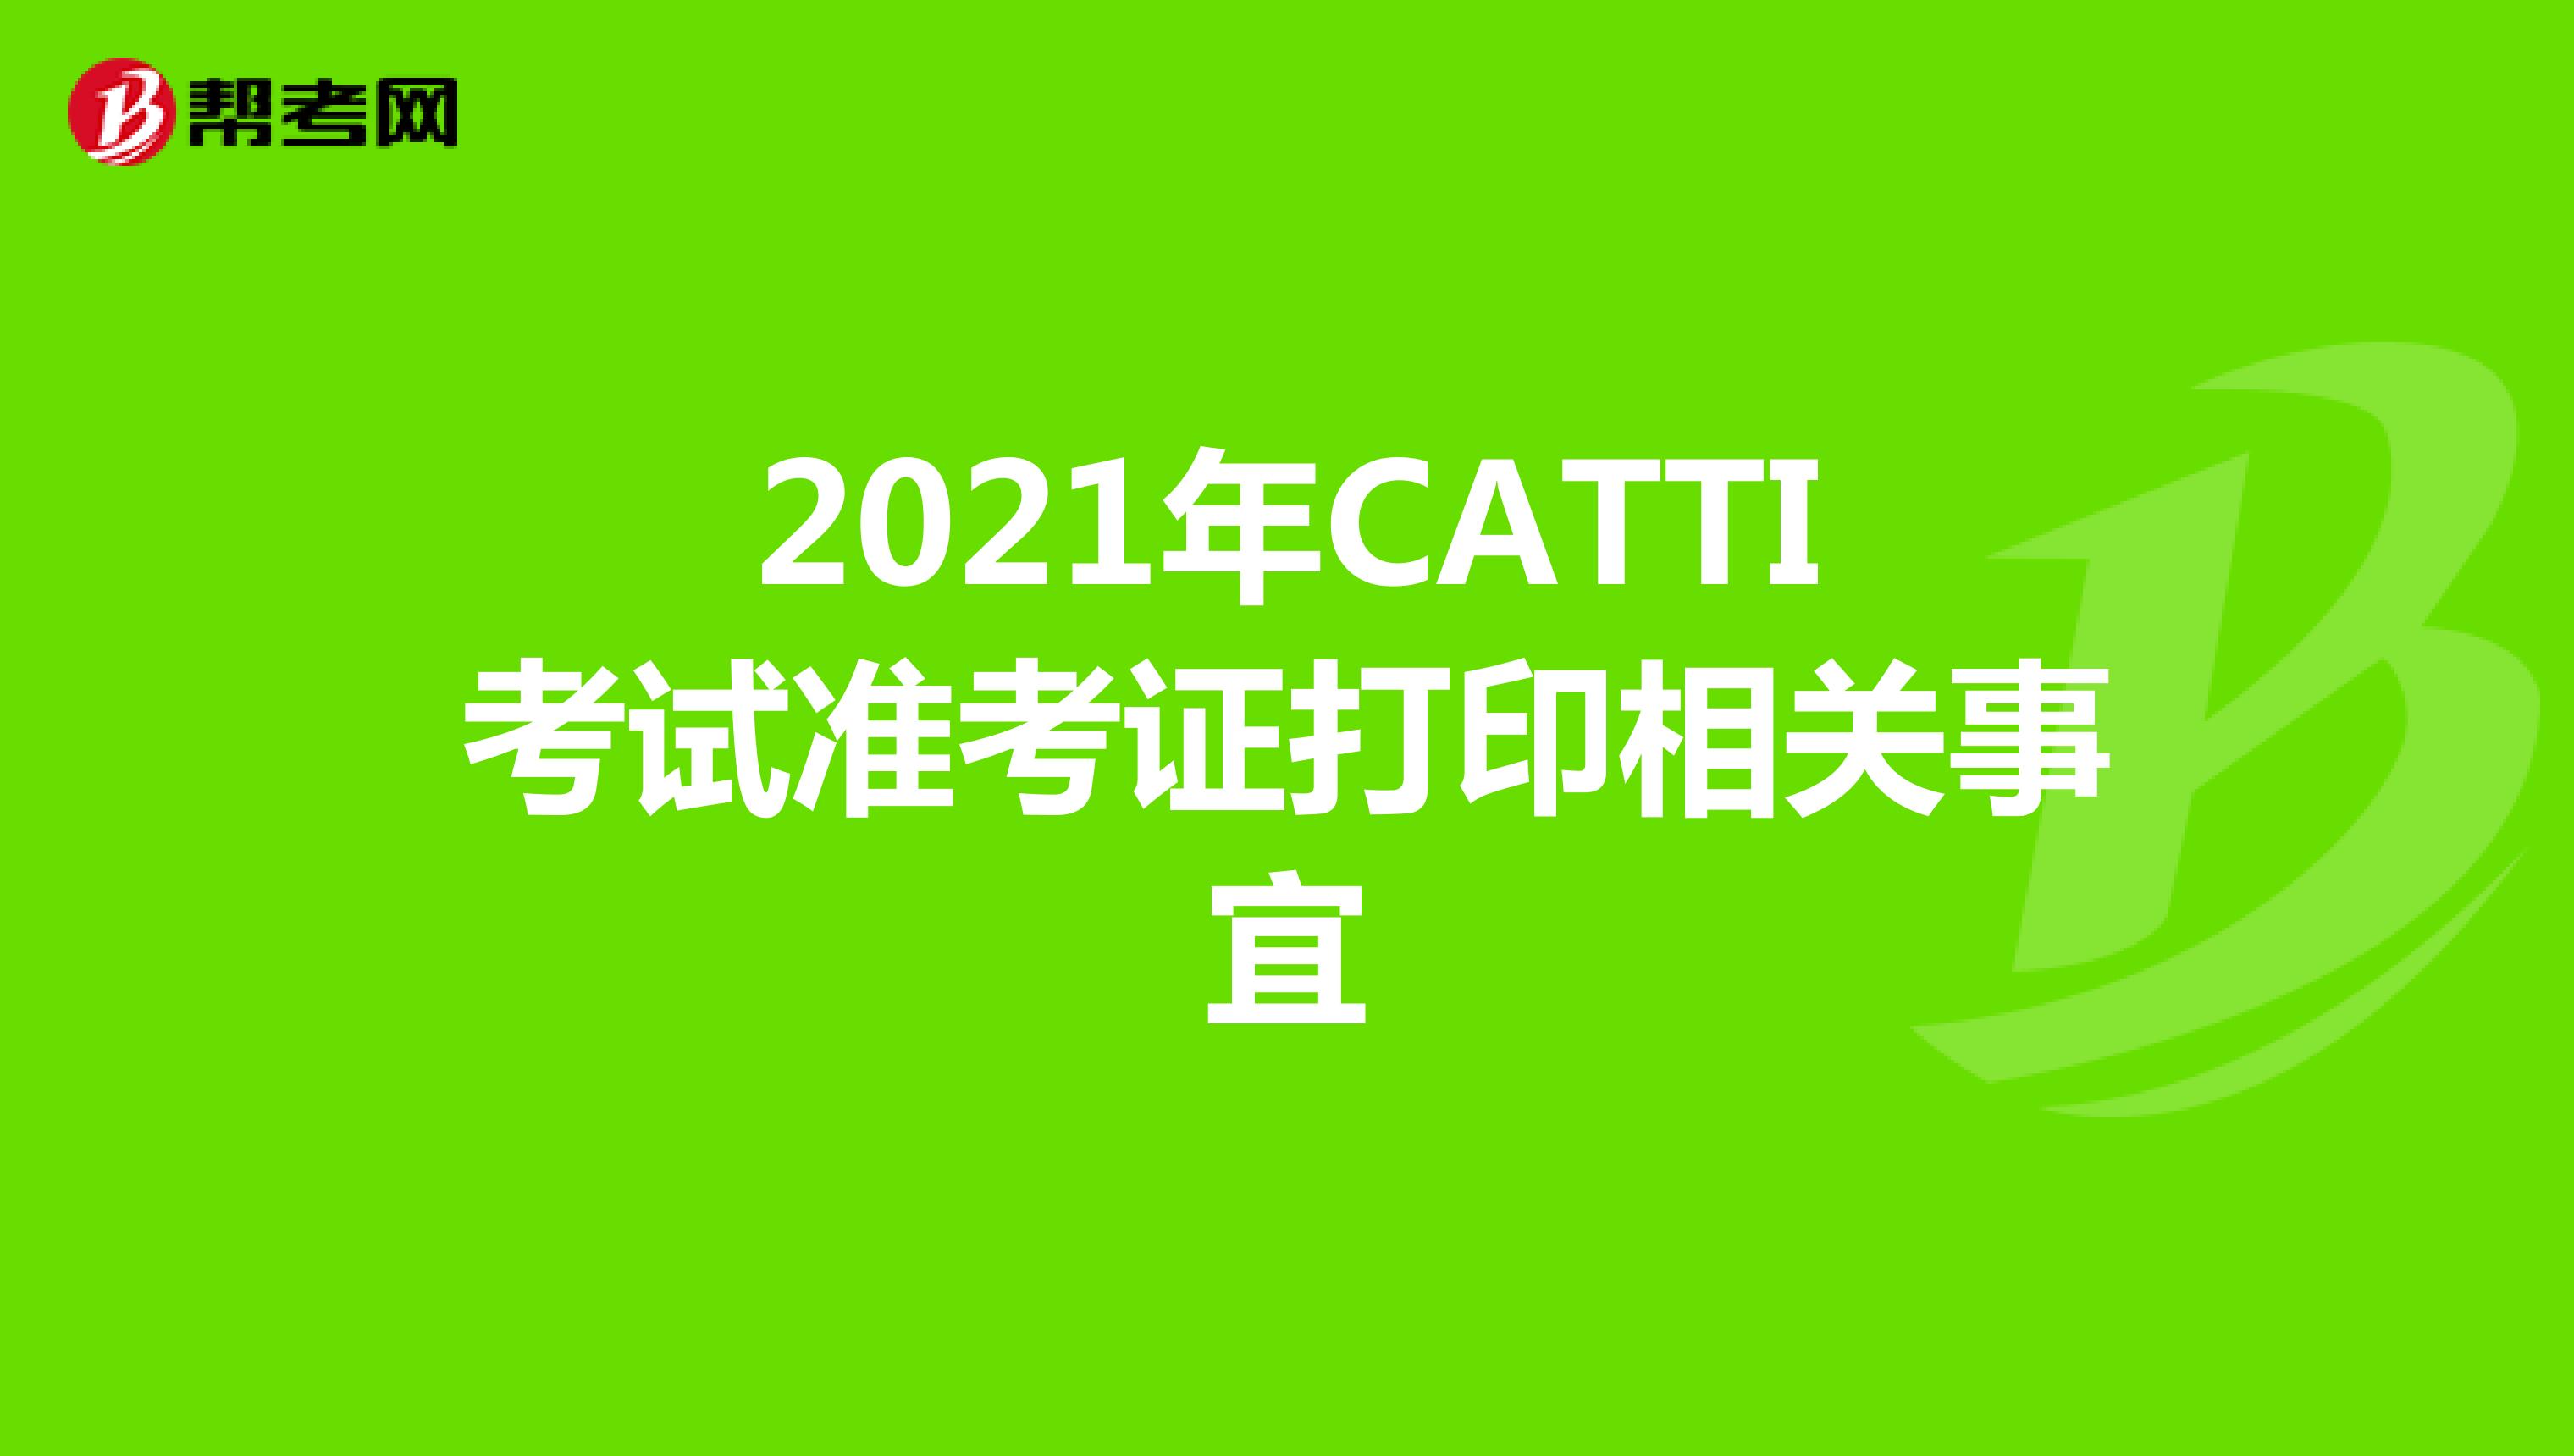 2021年CATTI考试准考证打印相关事宜